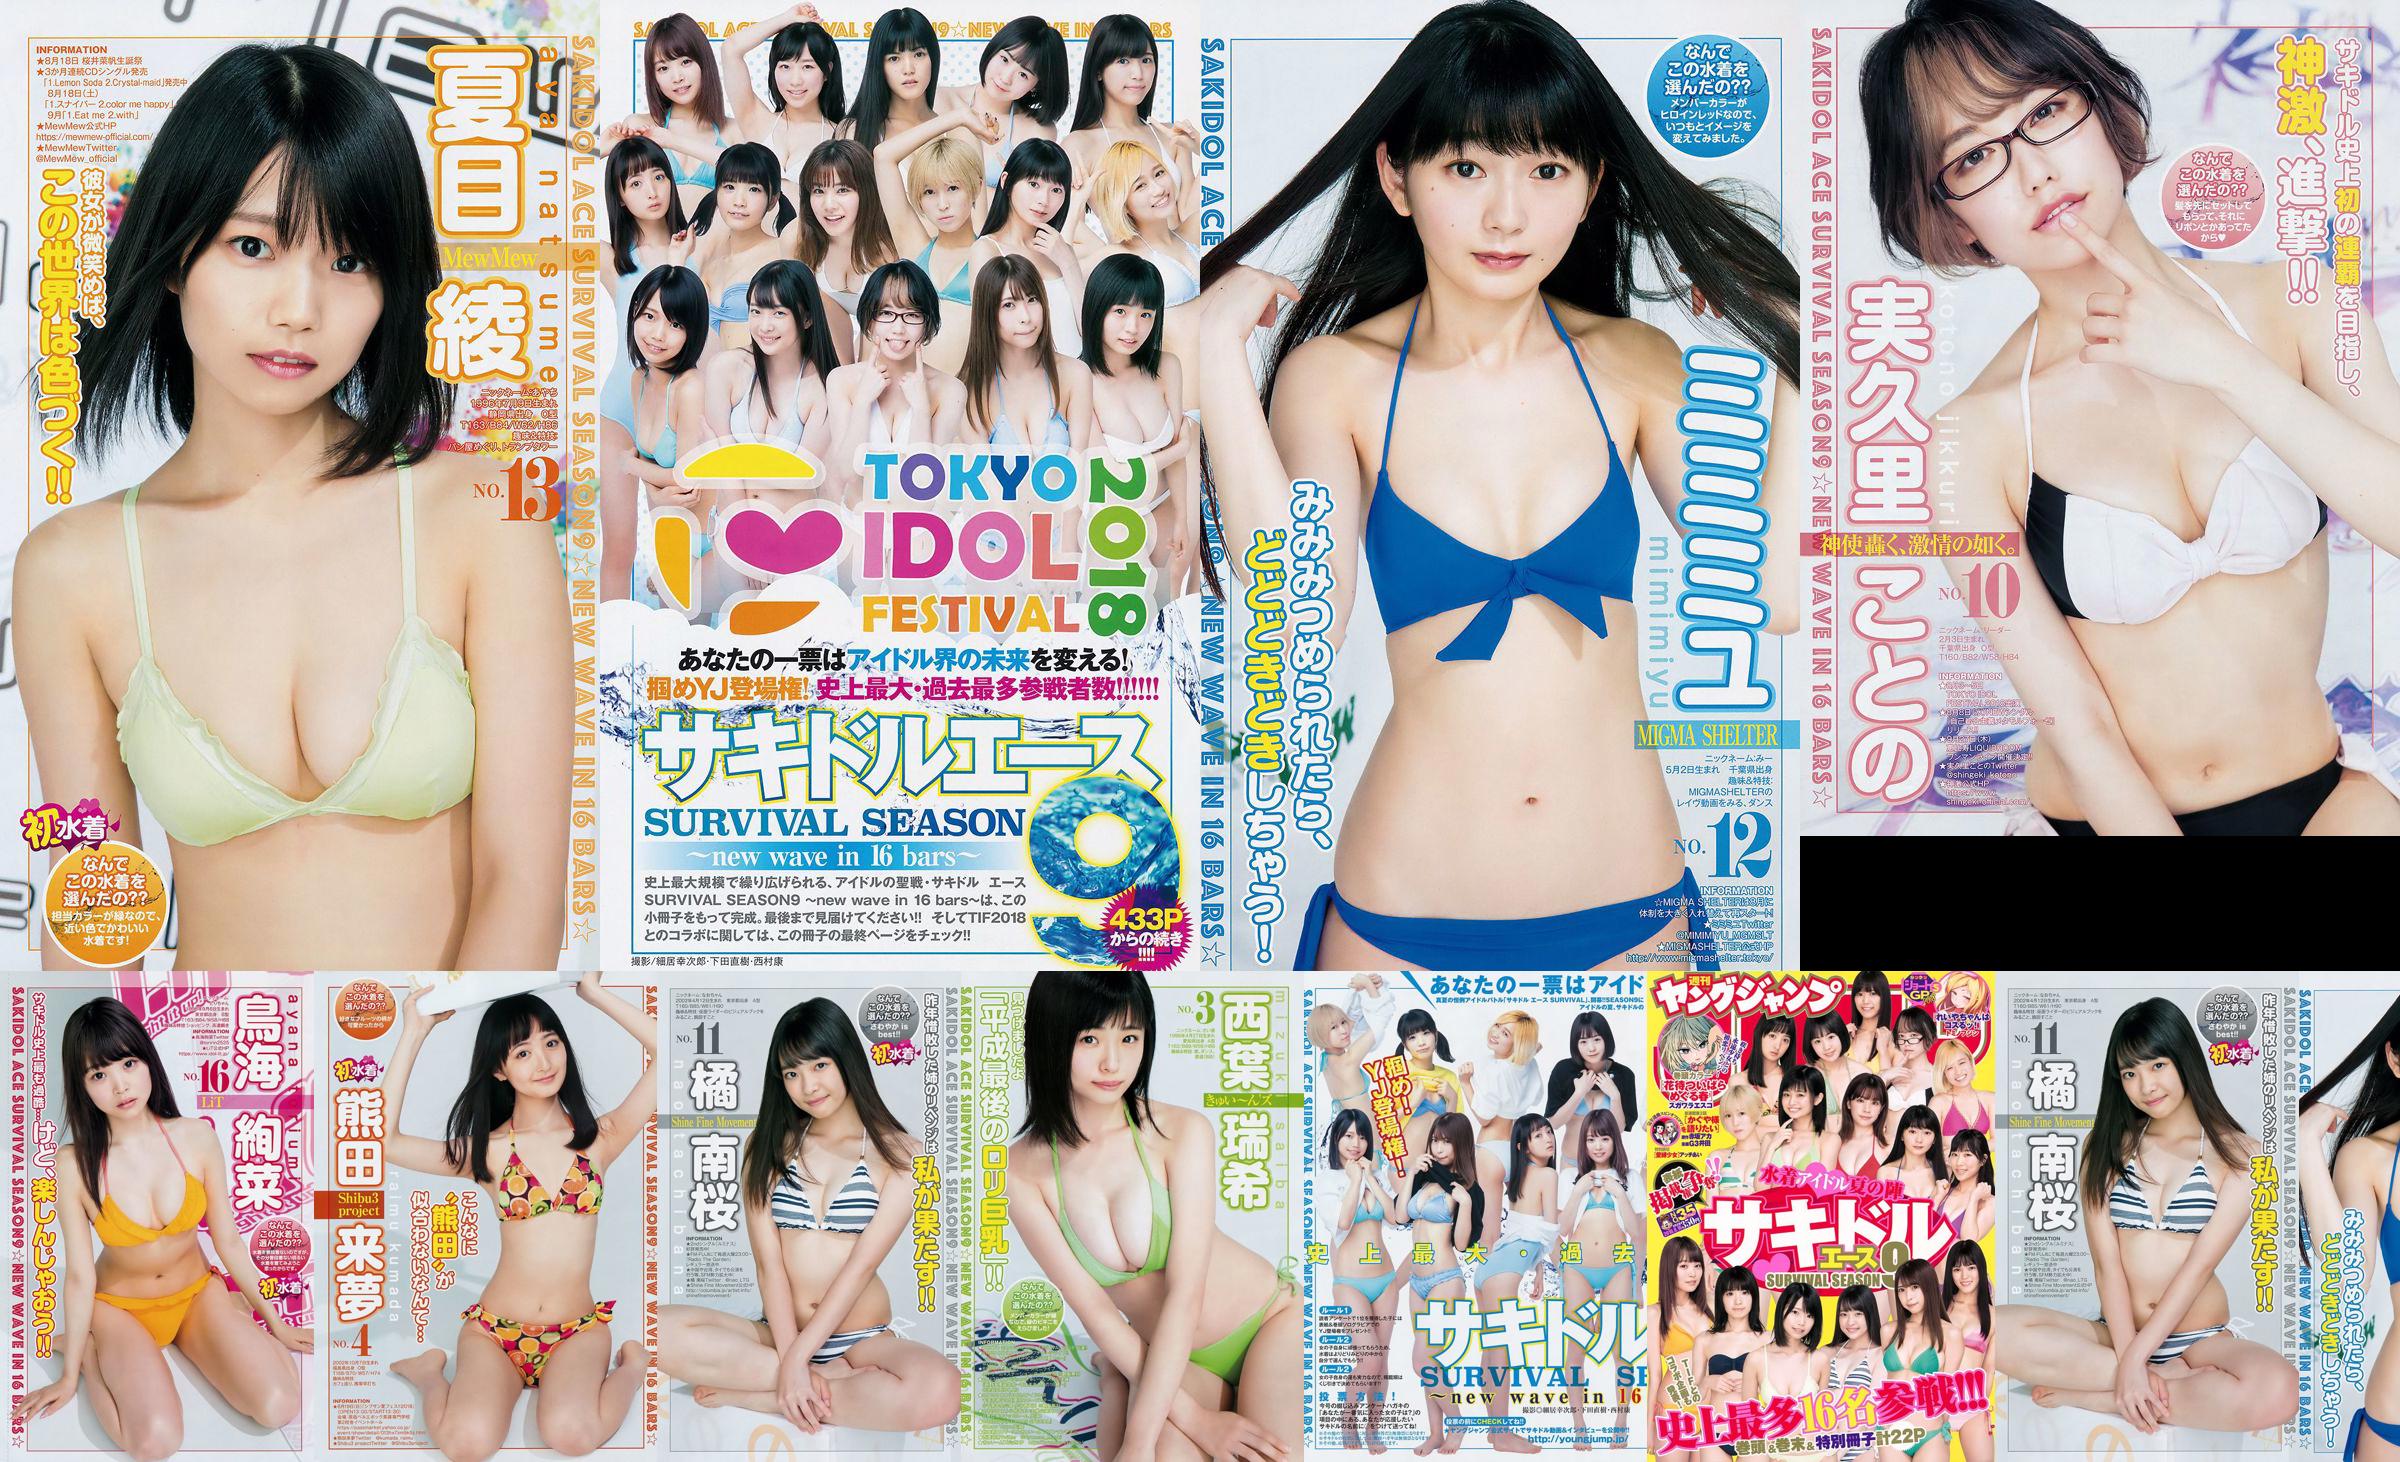 [FLASH] Ikumi Hisamatsu Risa Hirako Ren Ishikawa Angel Moe AKB48 Kaho Shibuya Misuzu Hayashi Ririka 2015.04.21 Photo Toshi No.bffdac Page 1